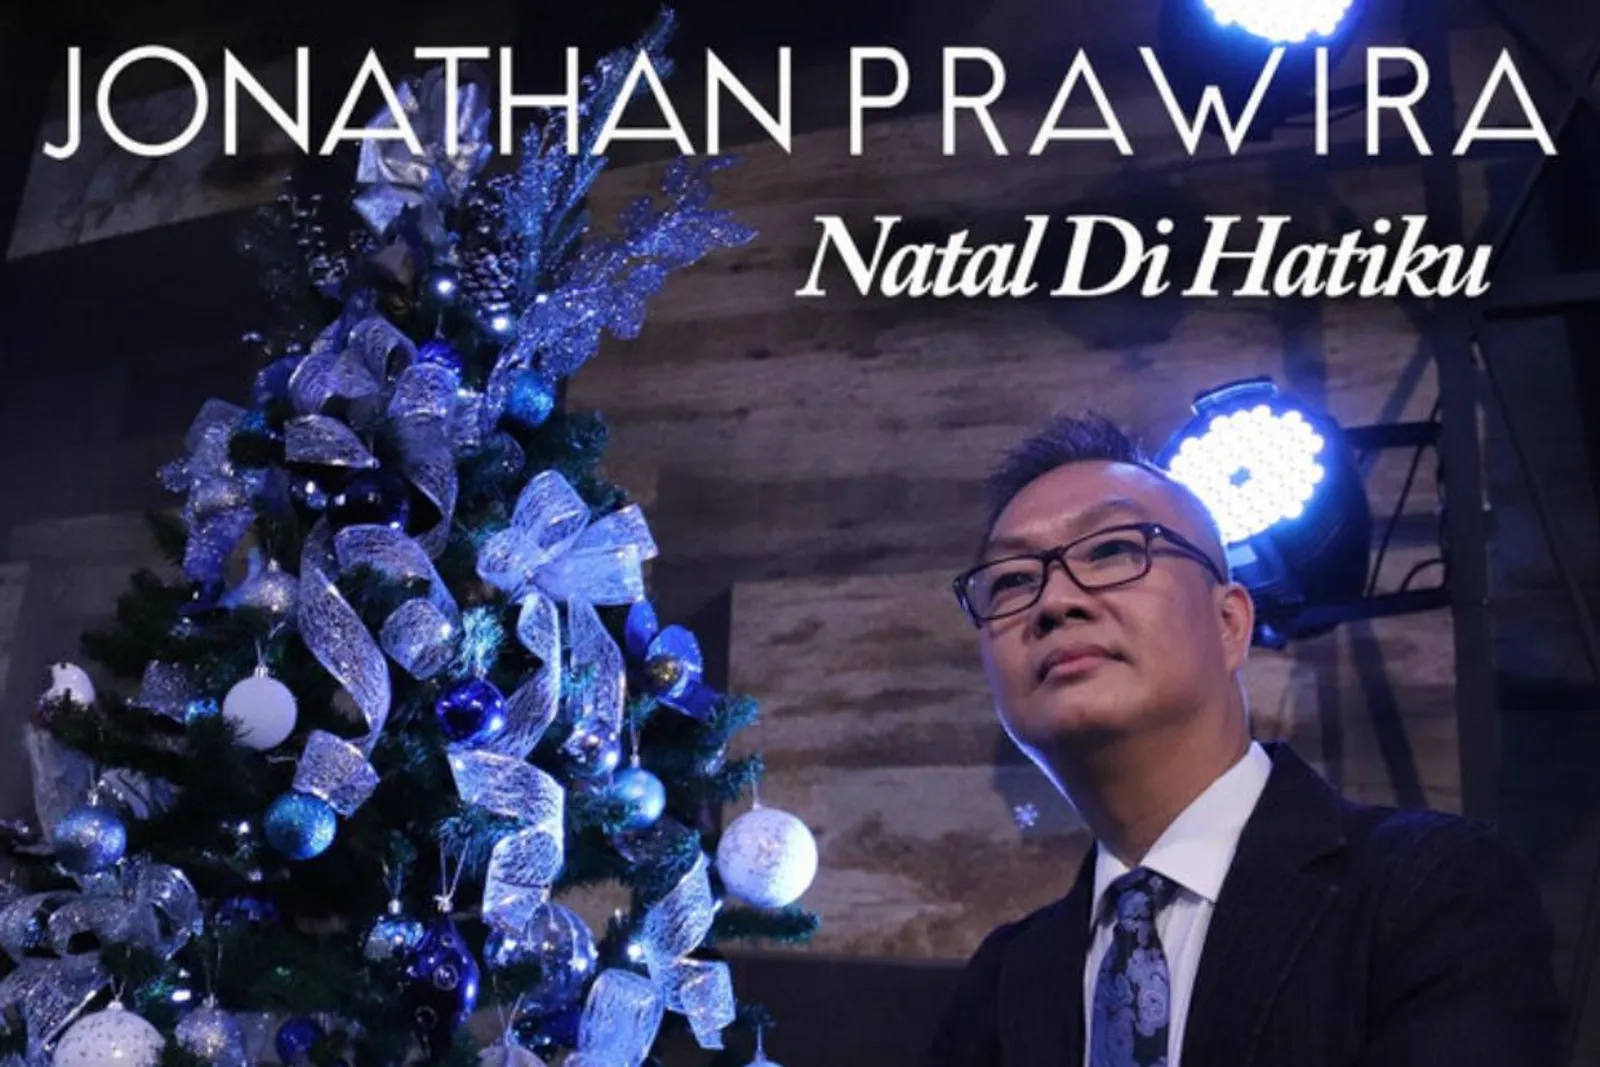 Lirik Lagu "Natal di Hatiku" - Jonathan Prawira Berserta Maknanya